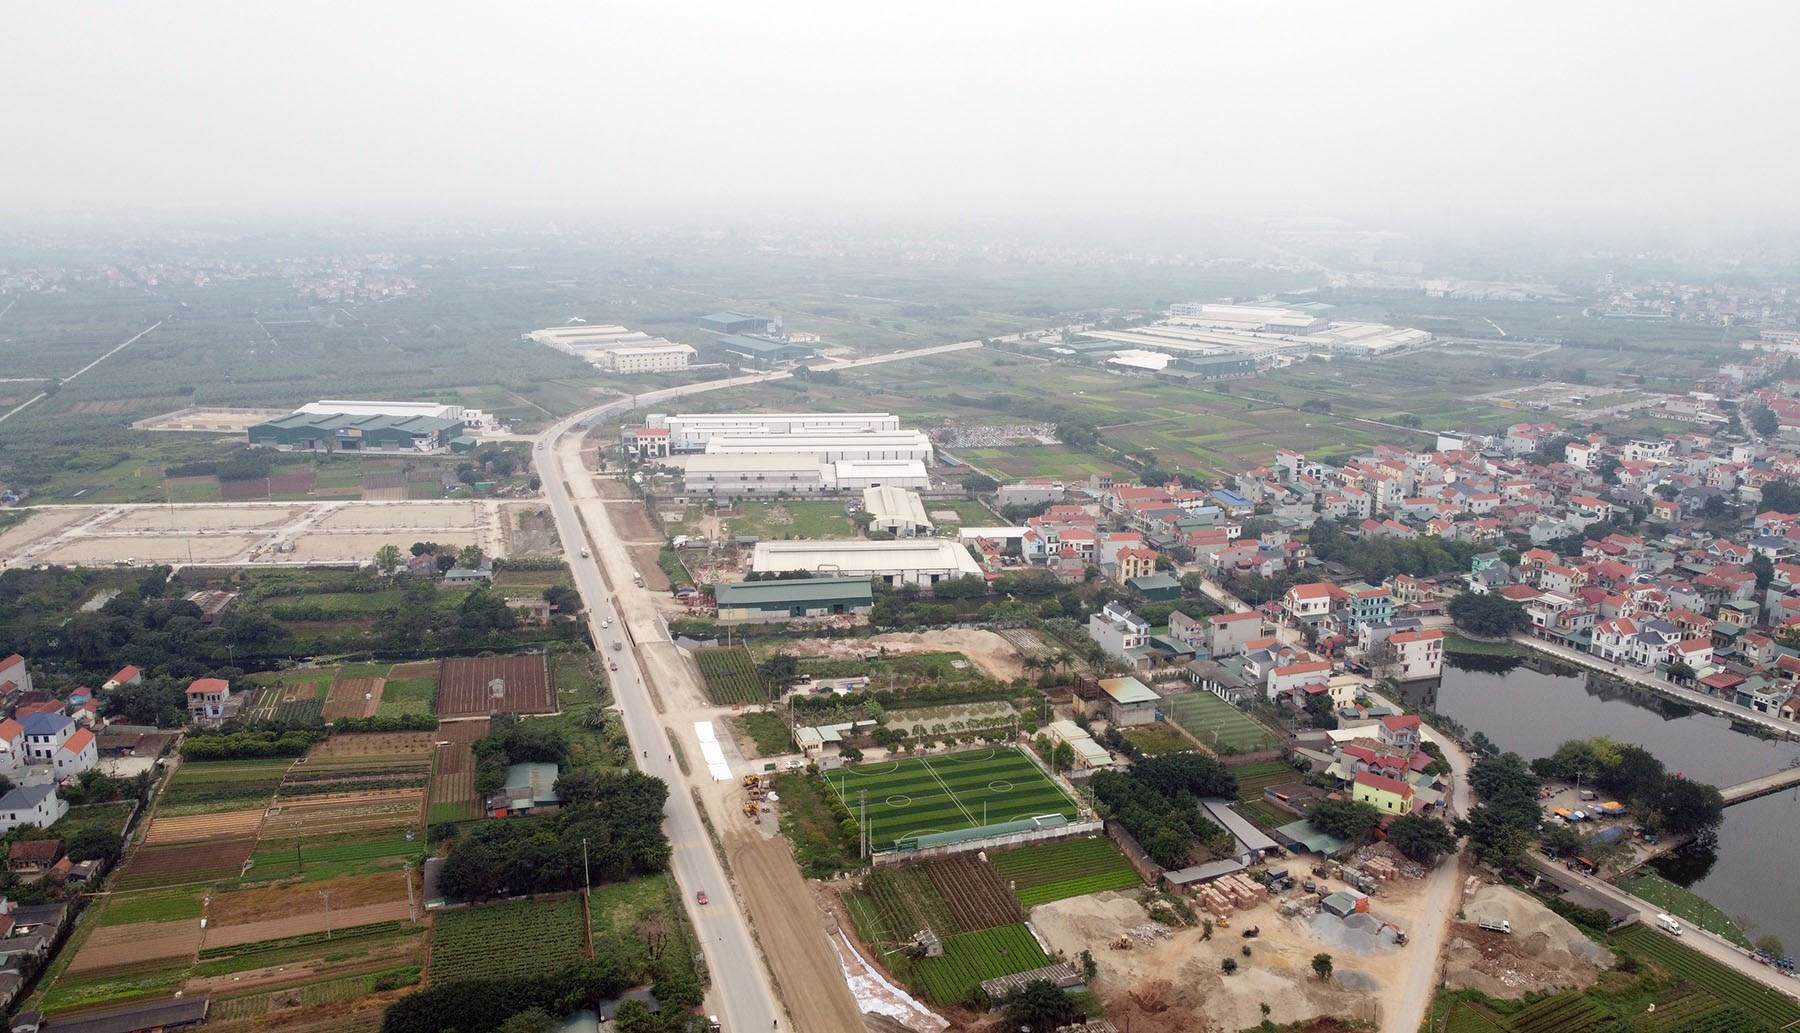 Hình ảnh đường liên tỉnh Hà Nội - Hưng Yên mở rộng giai đoạn 1 sắp hoàn thành